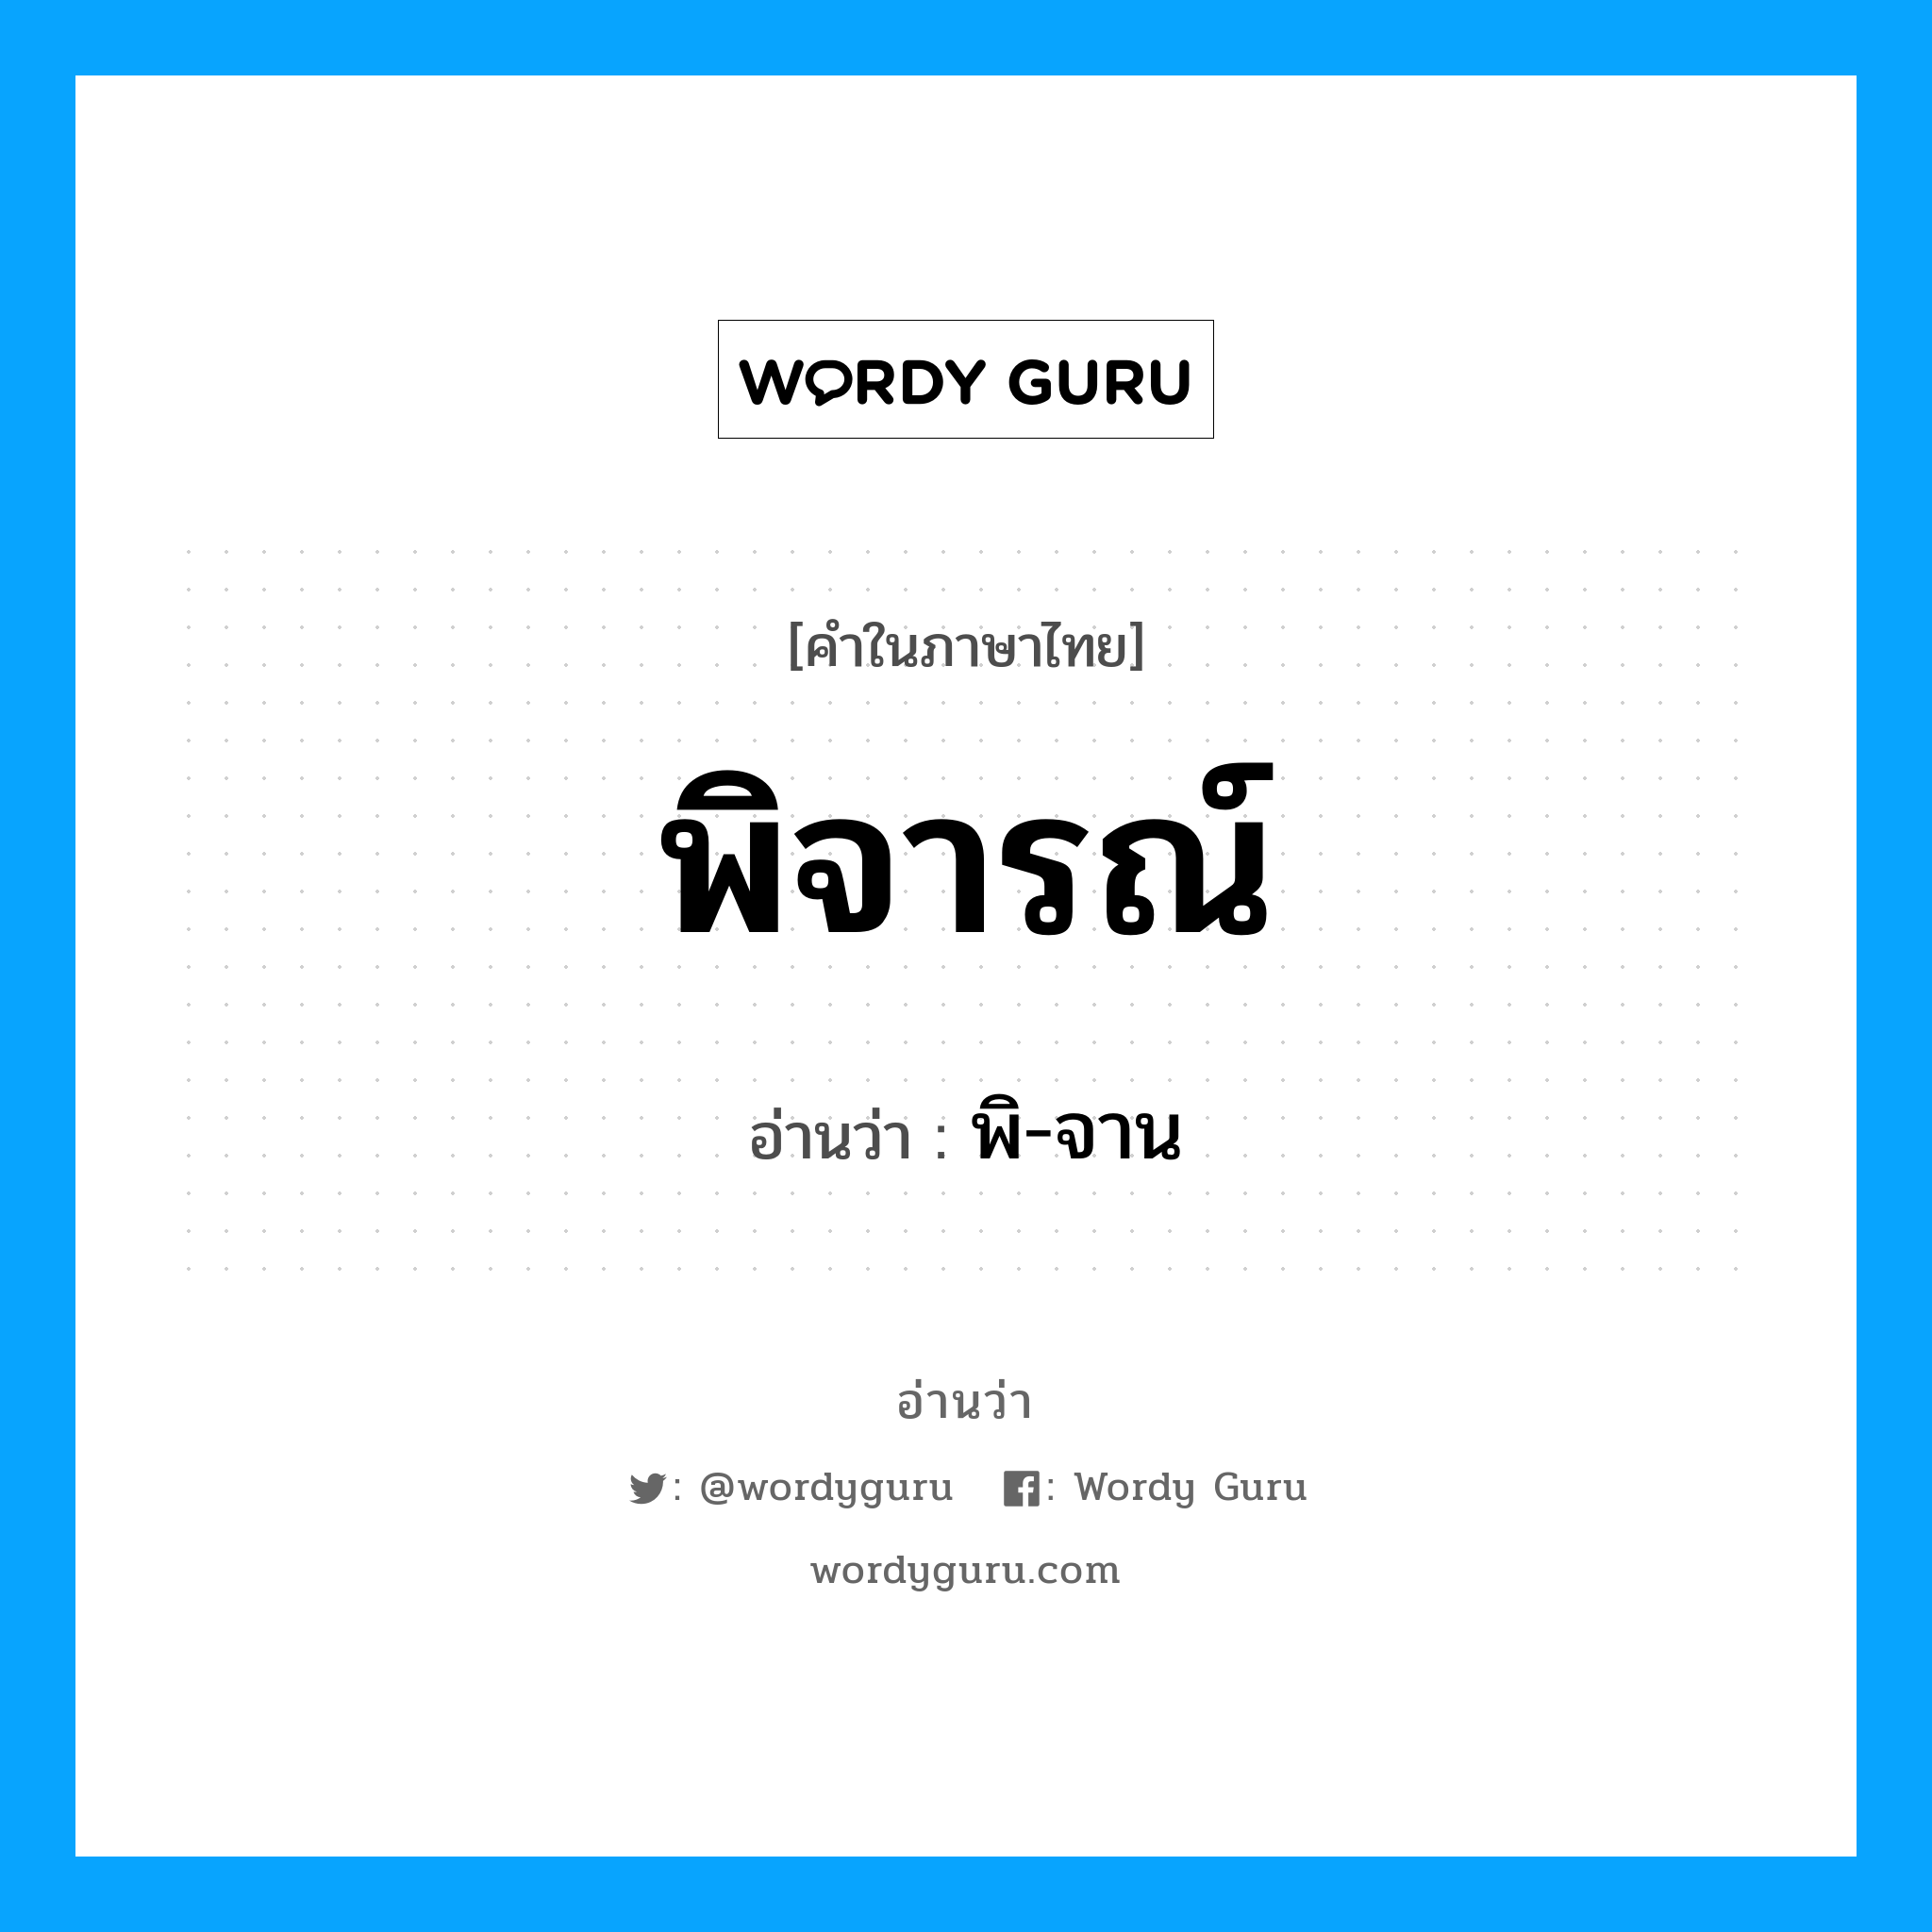 พิ-จาน เป็นคำอ่านของคำไหน?, คำในภาษาไทย พิ-จาน อ่านว่า พิจารณ์